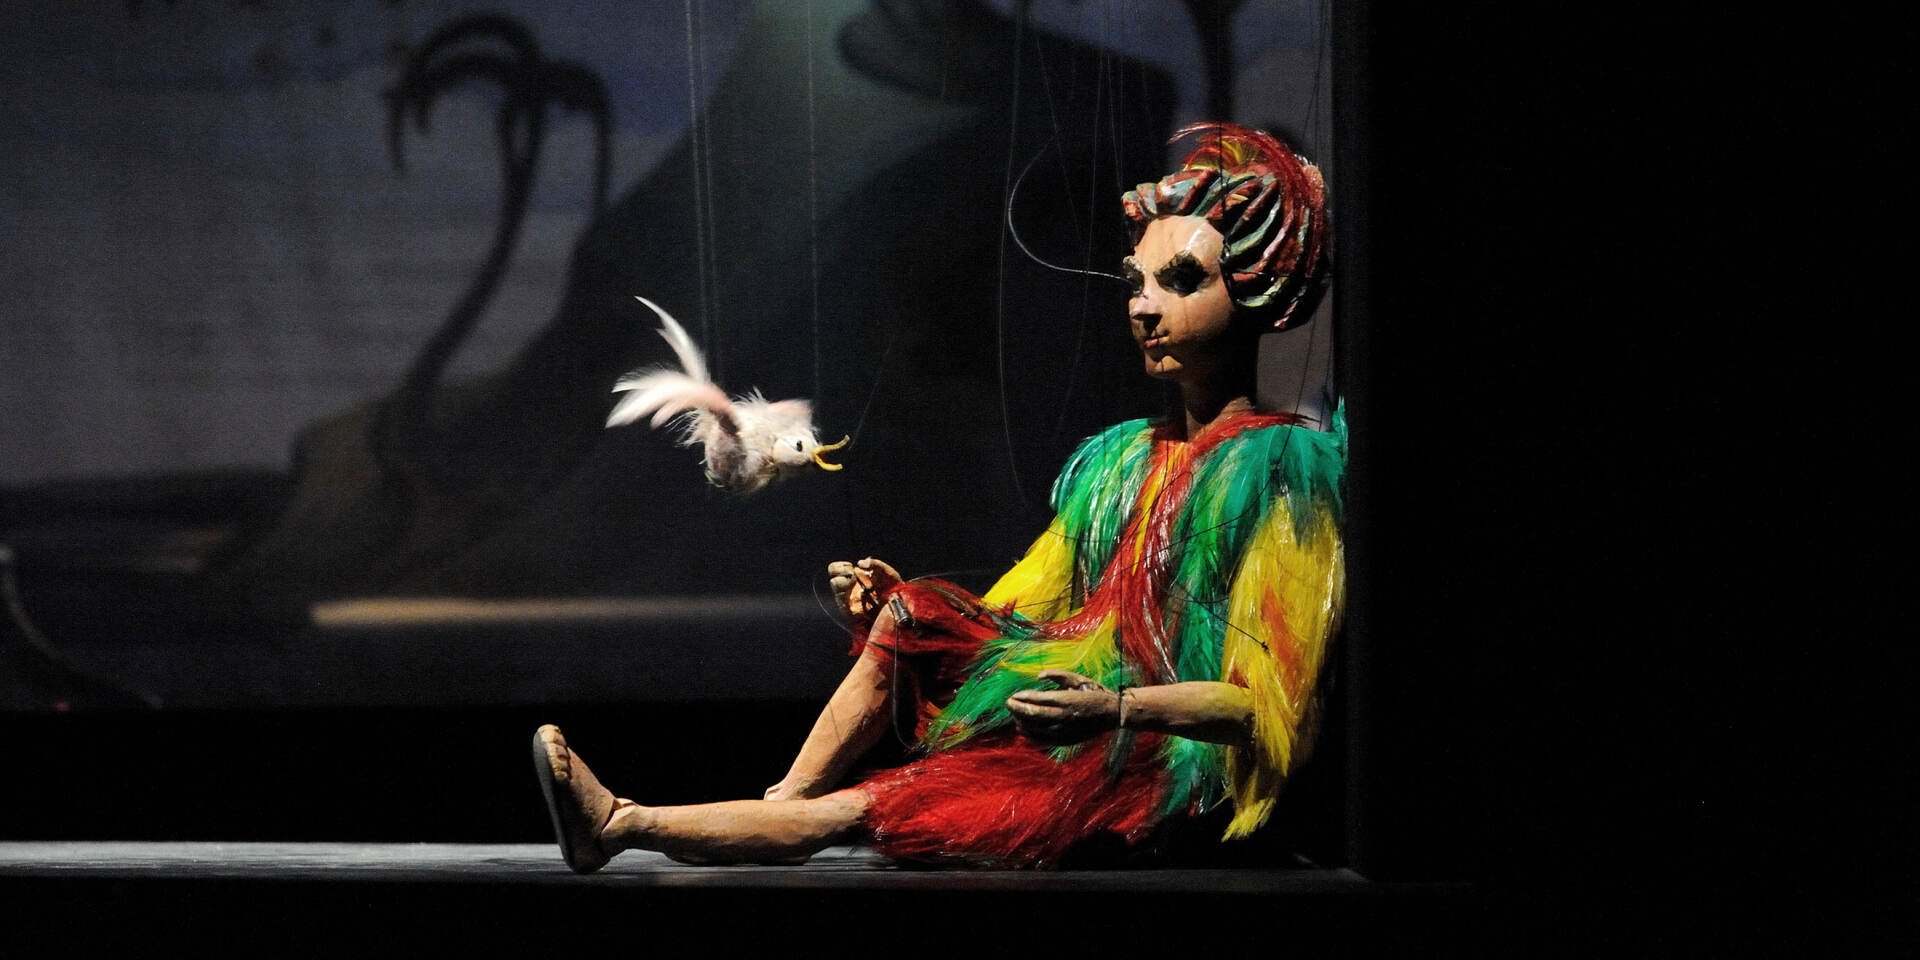 Salzburger Marionettentheater - Die Zauberflöte - Papageno © Salzburger Marionettentheater